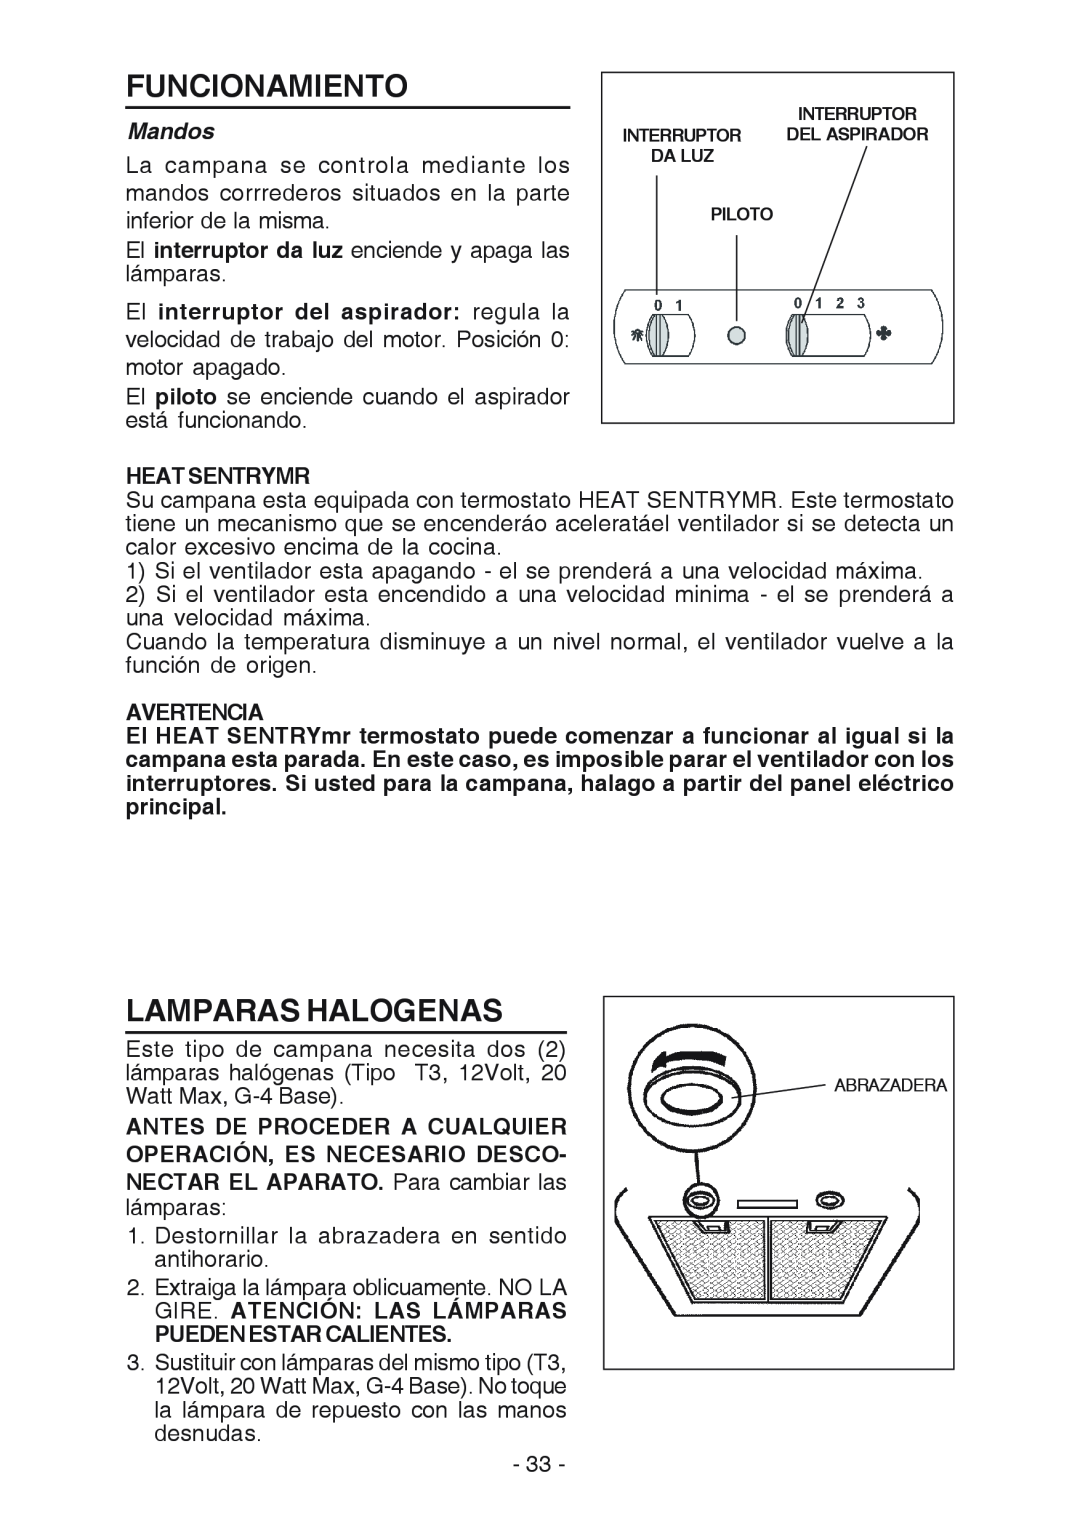 Broan RM519004 manual Funcionamiento, Lamparas Halogenas, Mandos, El interruptor del aspirador regula la, Heat Sentrymr 